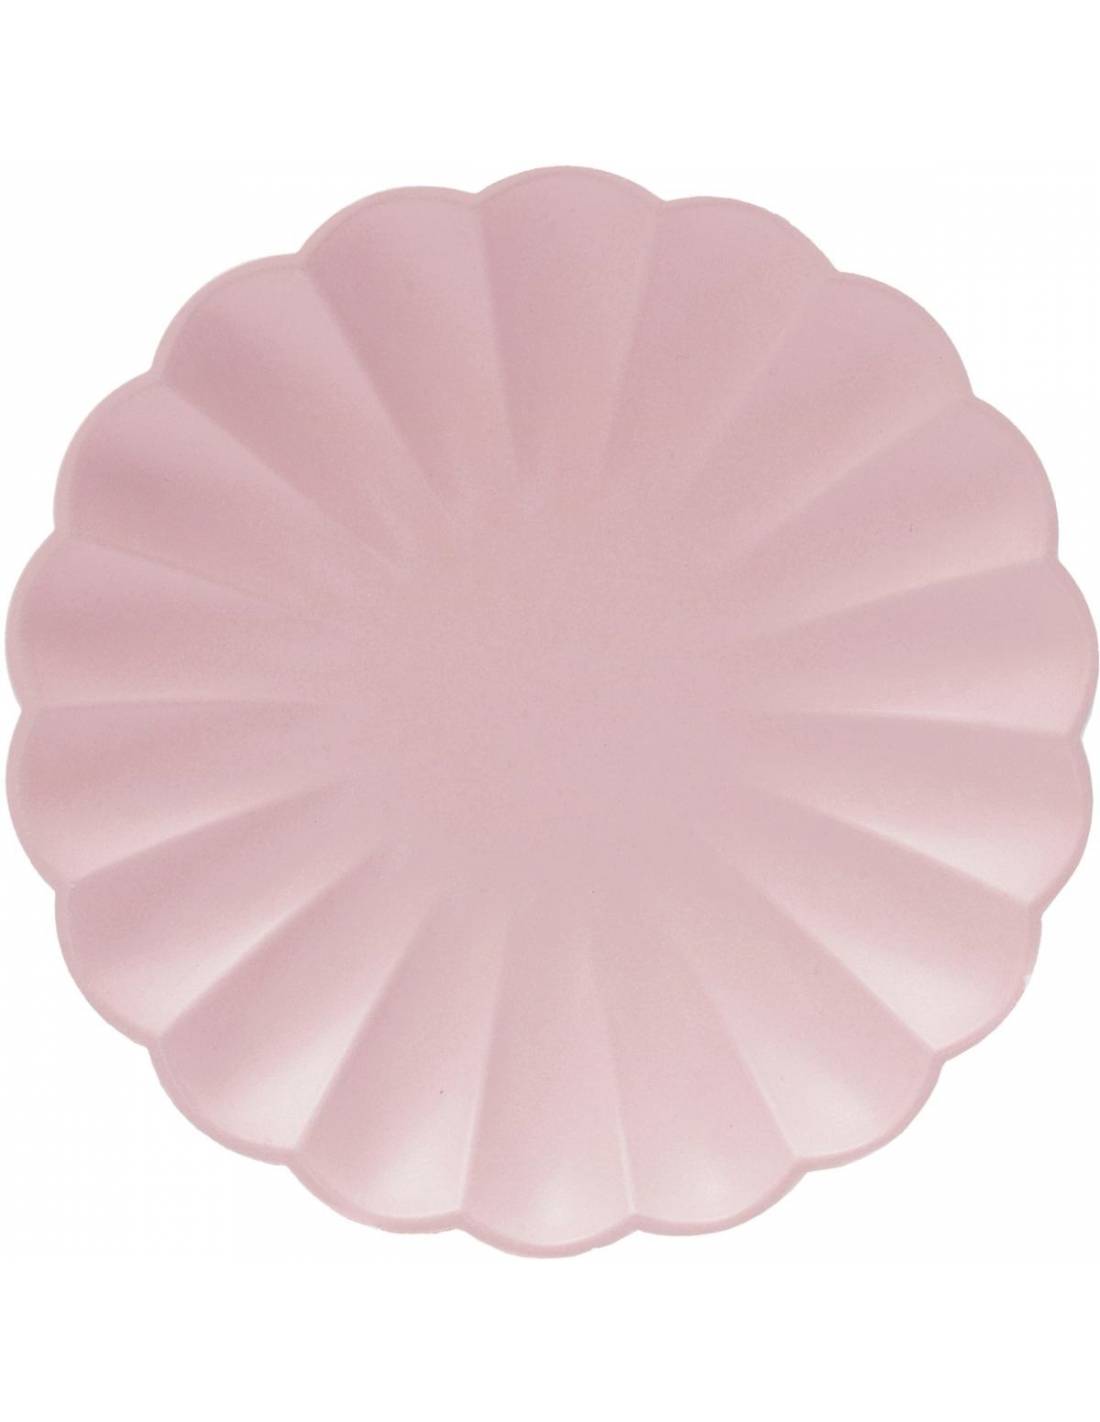 Placa básica de pastel rosa pastel compostável Eco / 8 pcs.